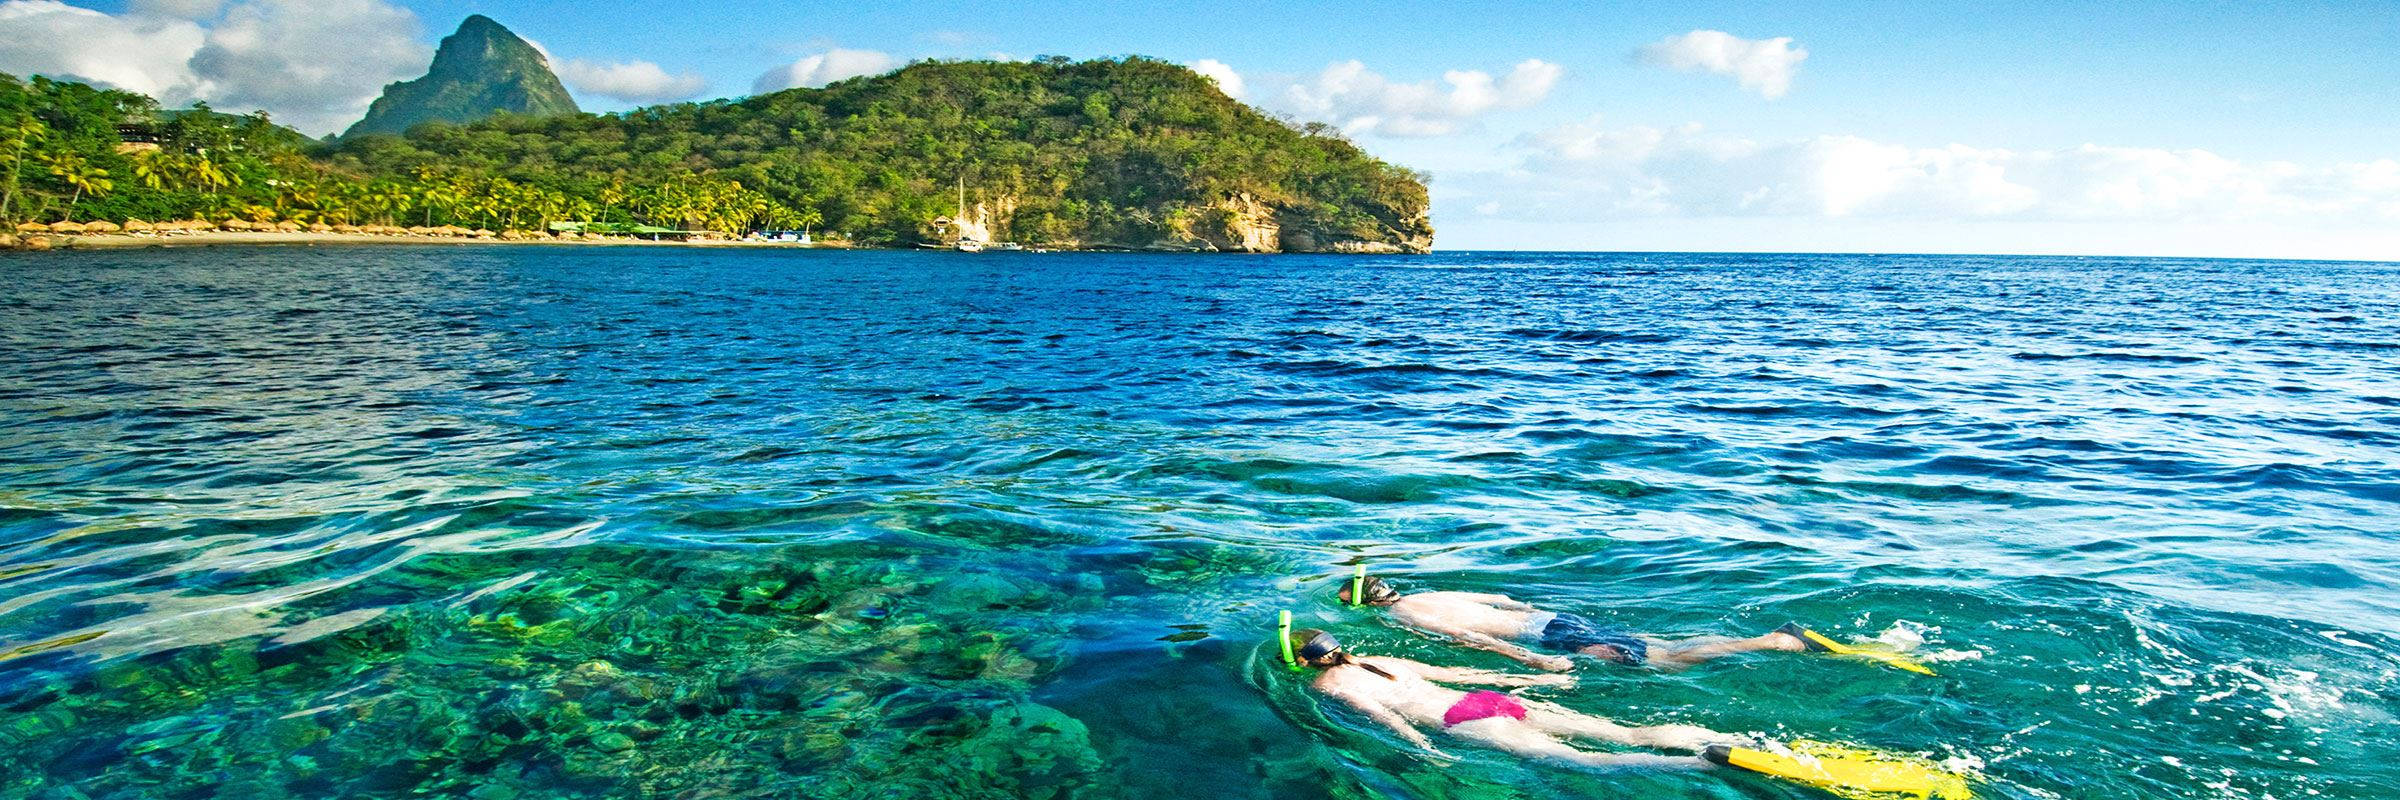 Svømning ved St Lucia skabe en smuk vandfane. Wallpaper